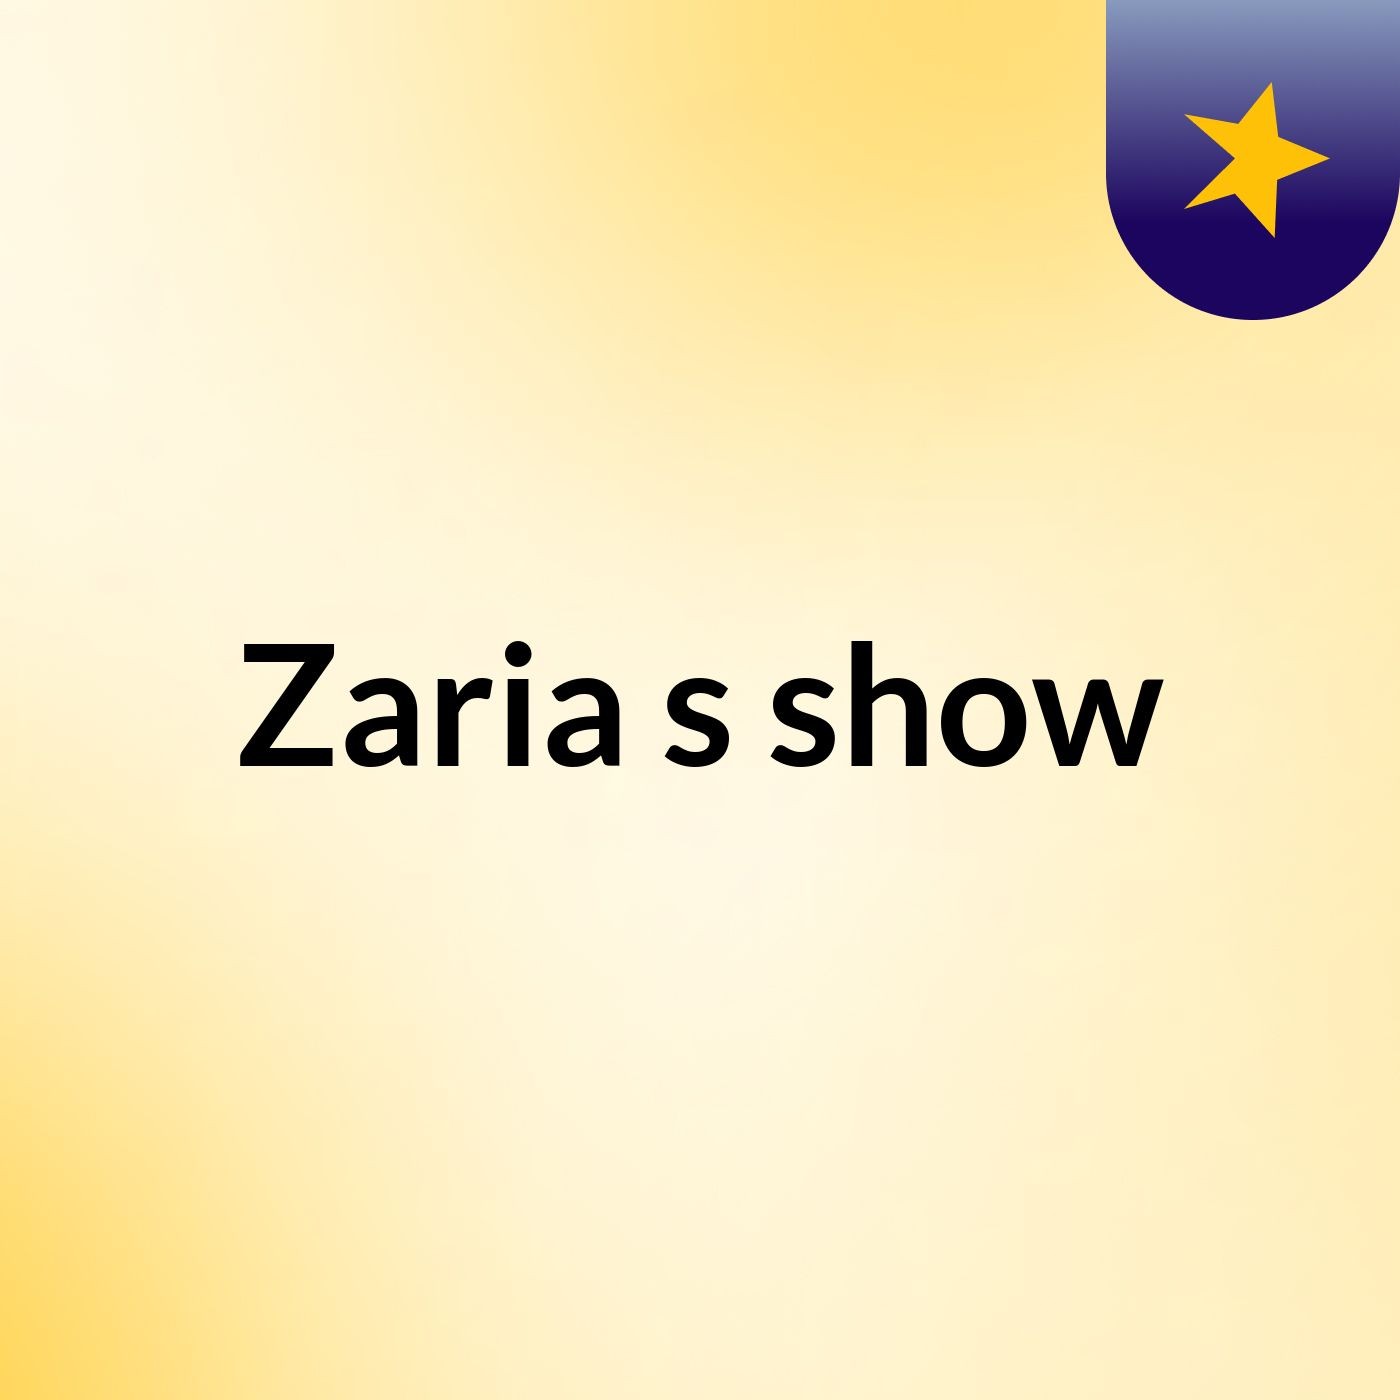 Zaria's show